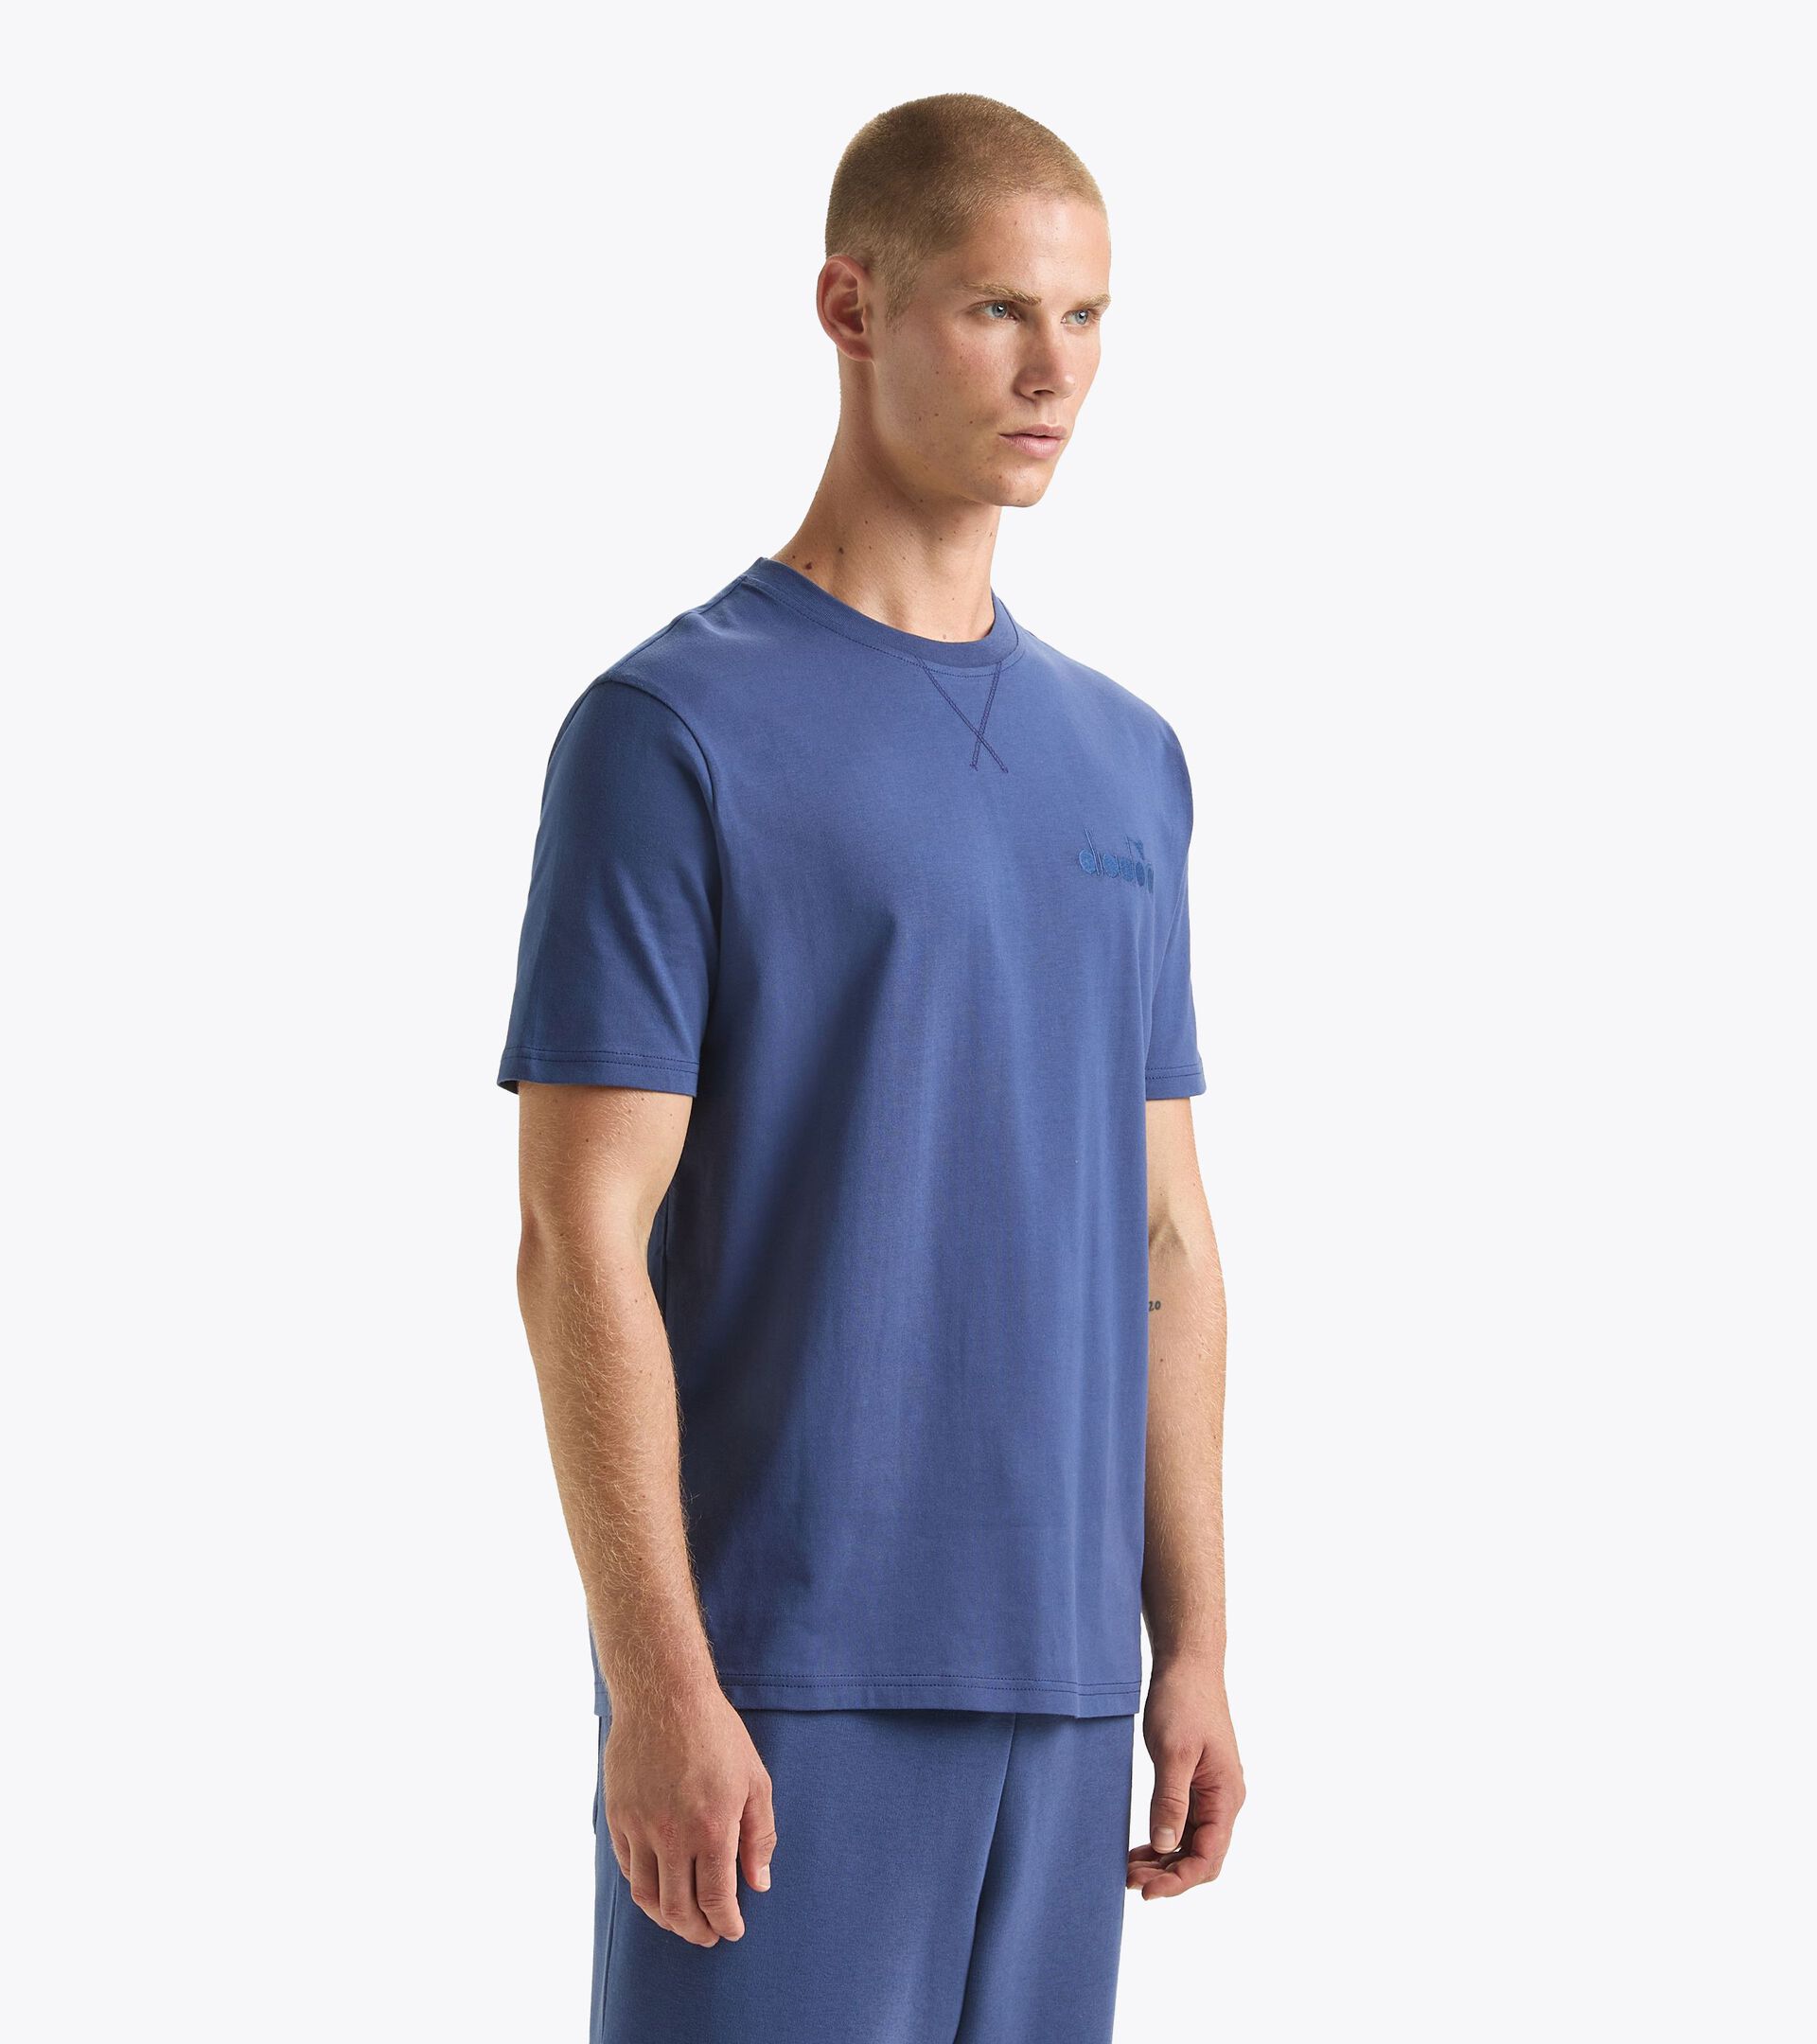 T-shirt - Gender Neutral T-SHIRT SS ATHL. LOGO OCEANA - Diadora